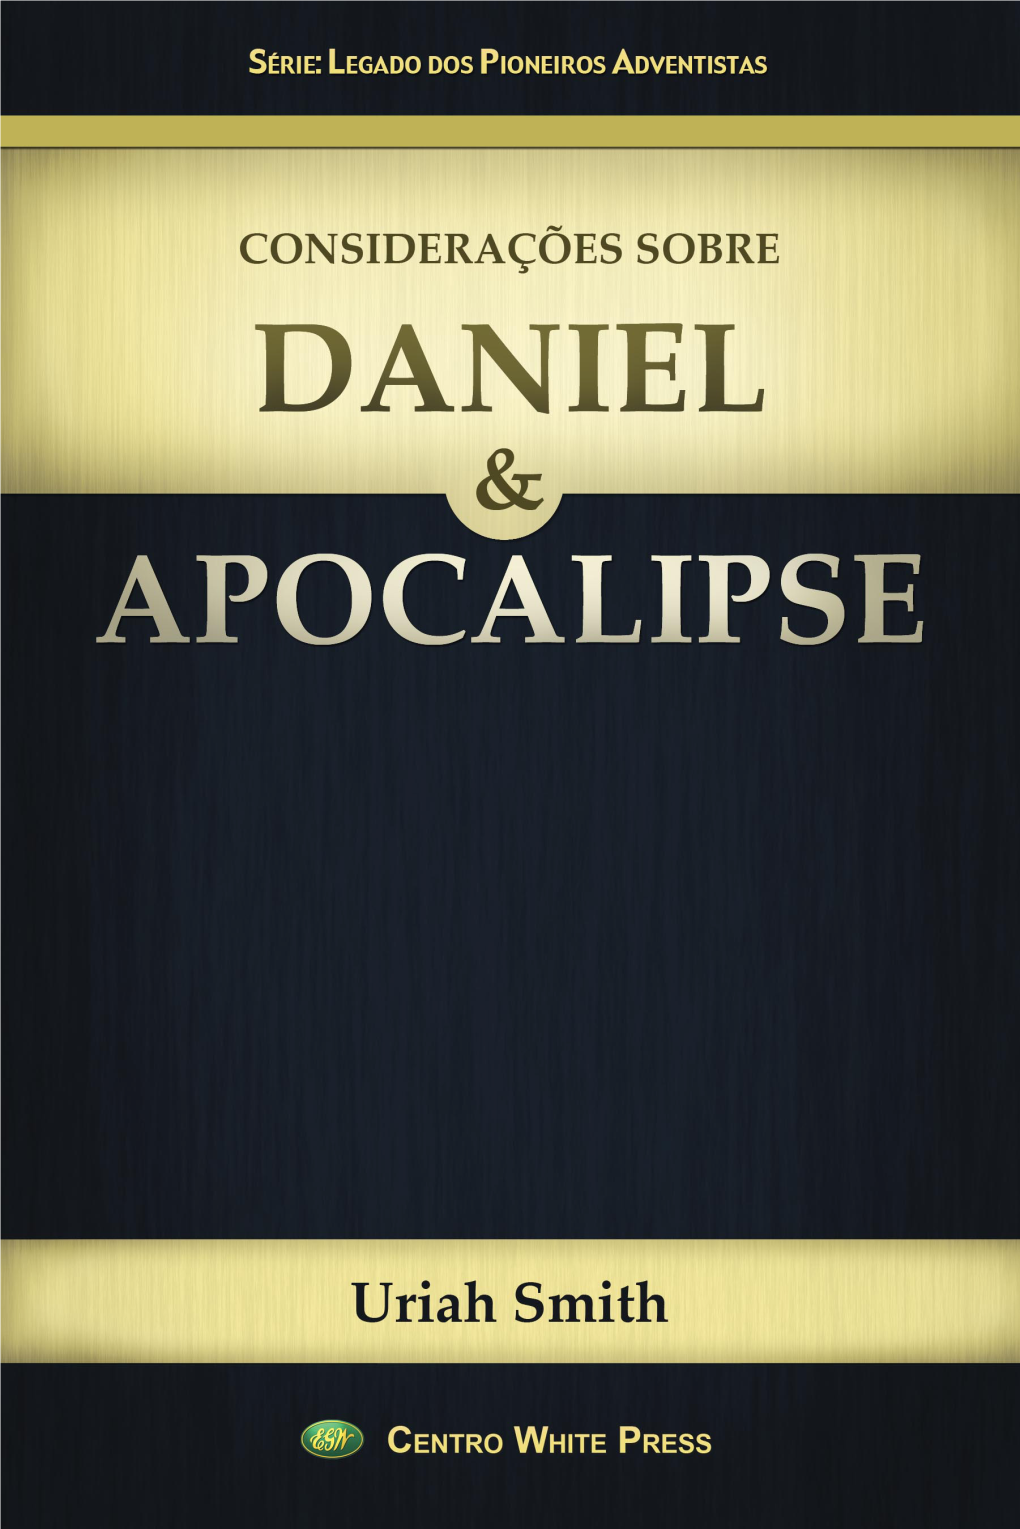 Daniel E Apocalipse